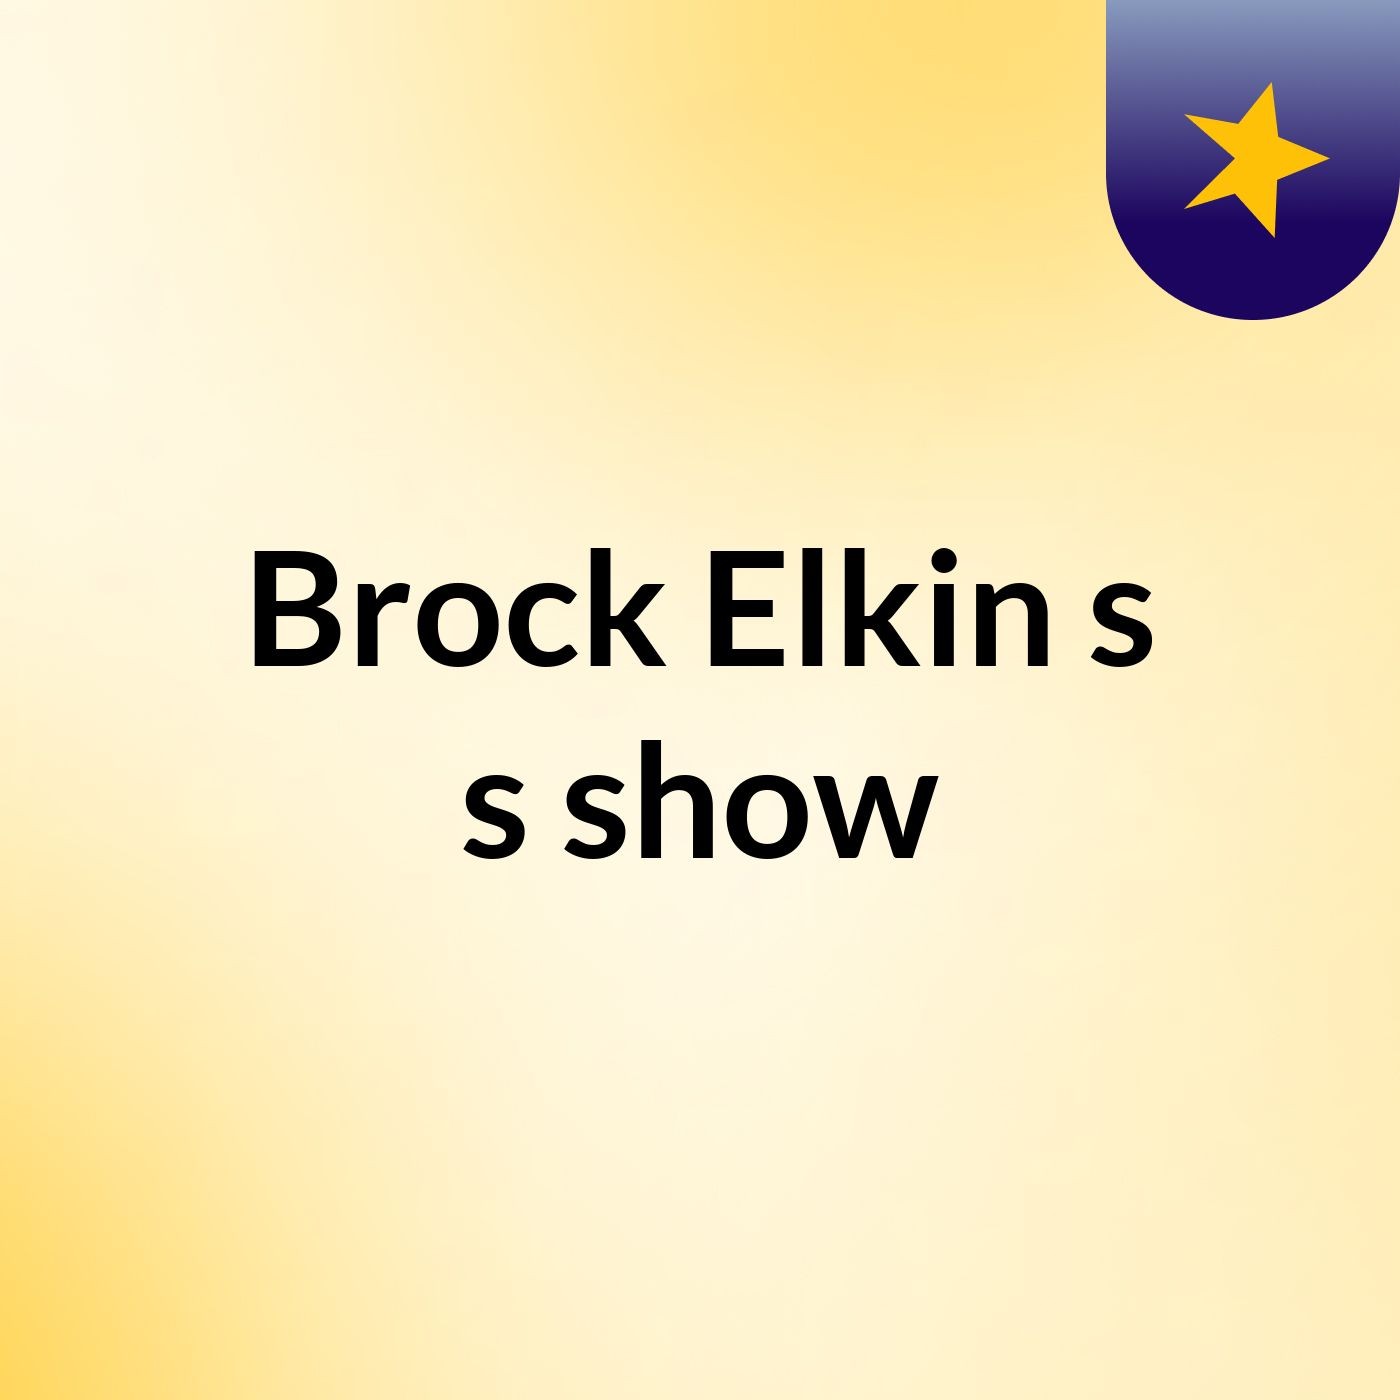 Brock Elkin s's show